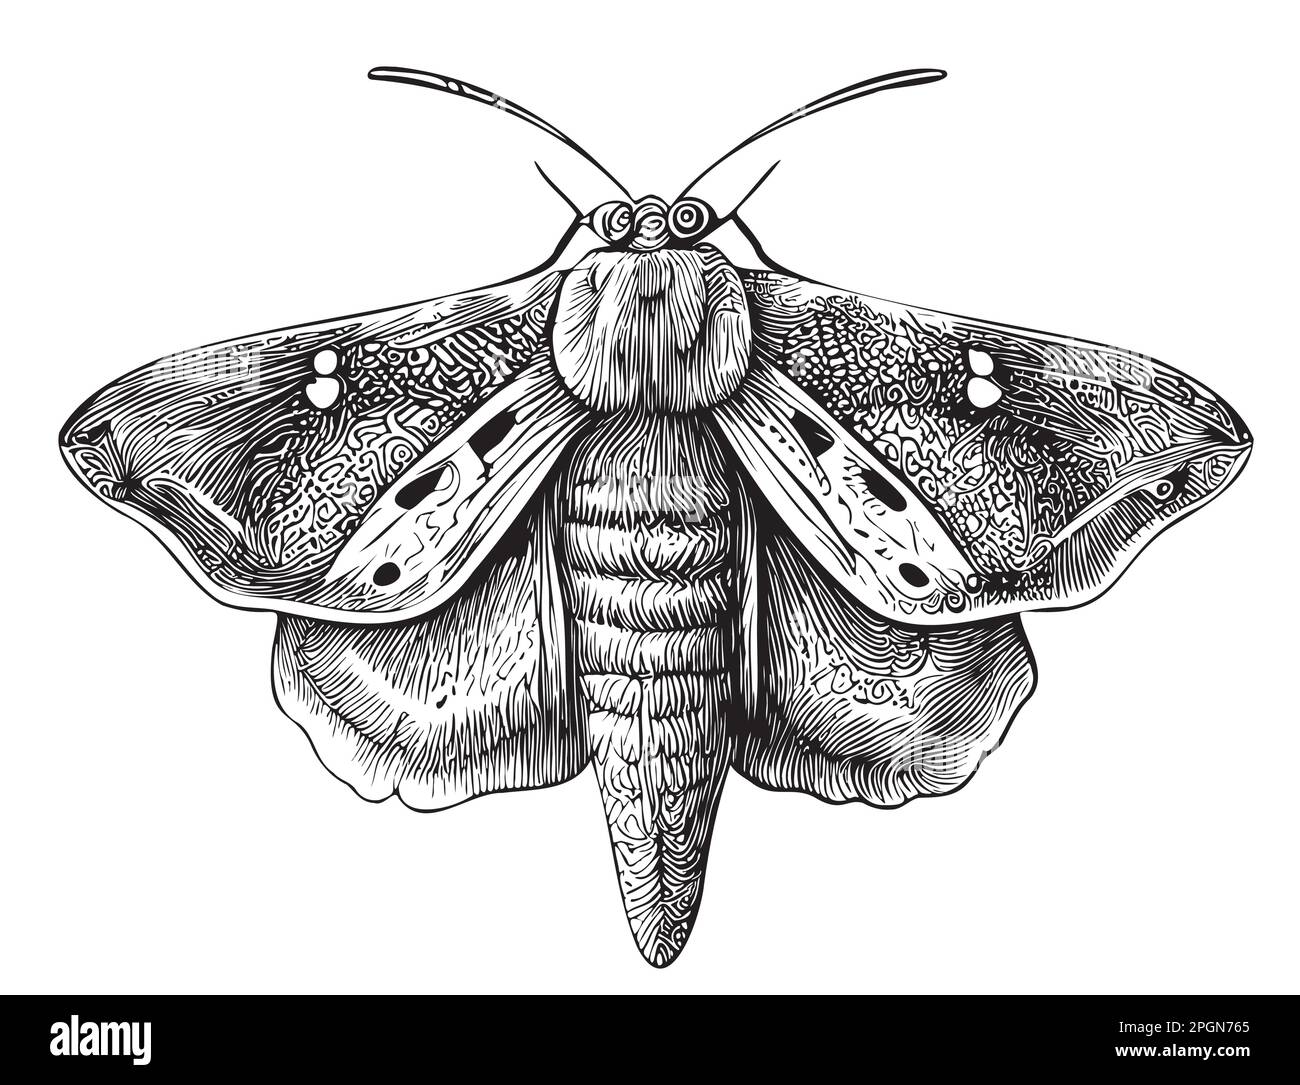 Von Hand gezeichnetes Motteninsekt in Doodle-Style-Illustration Stock Vektor